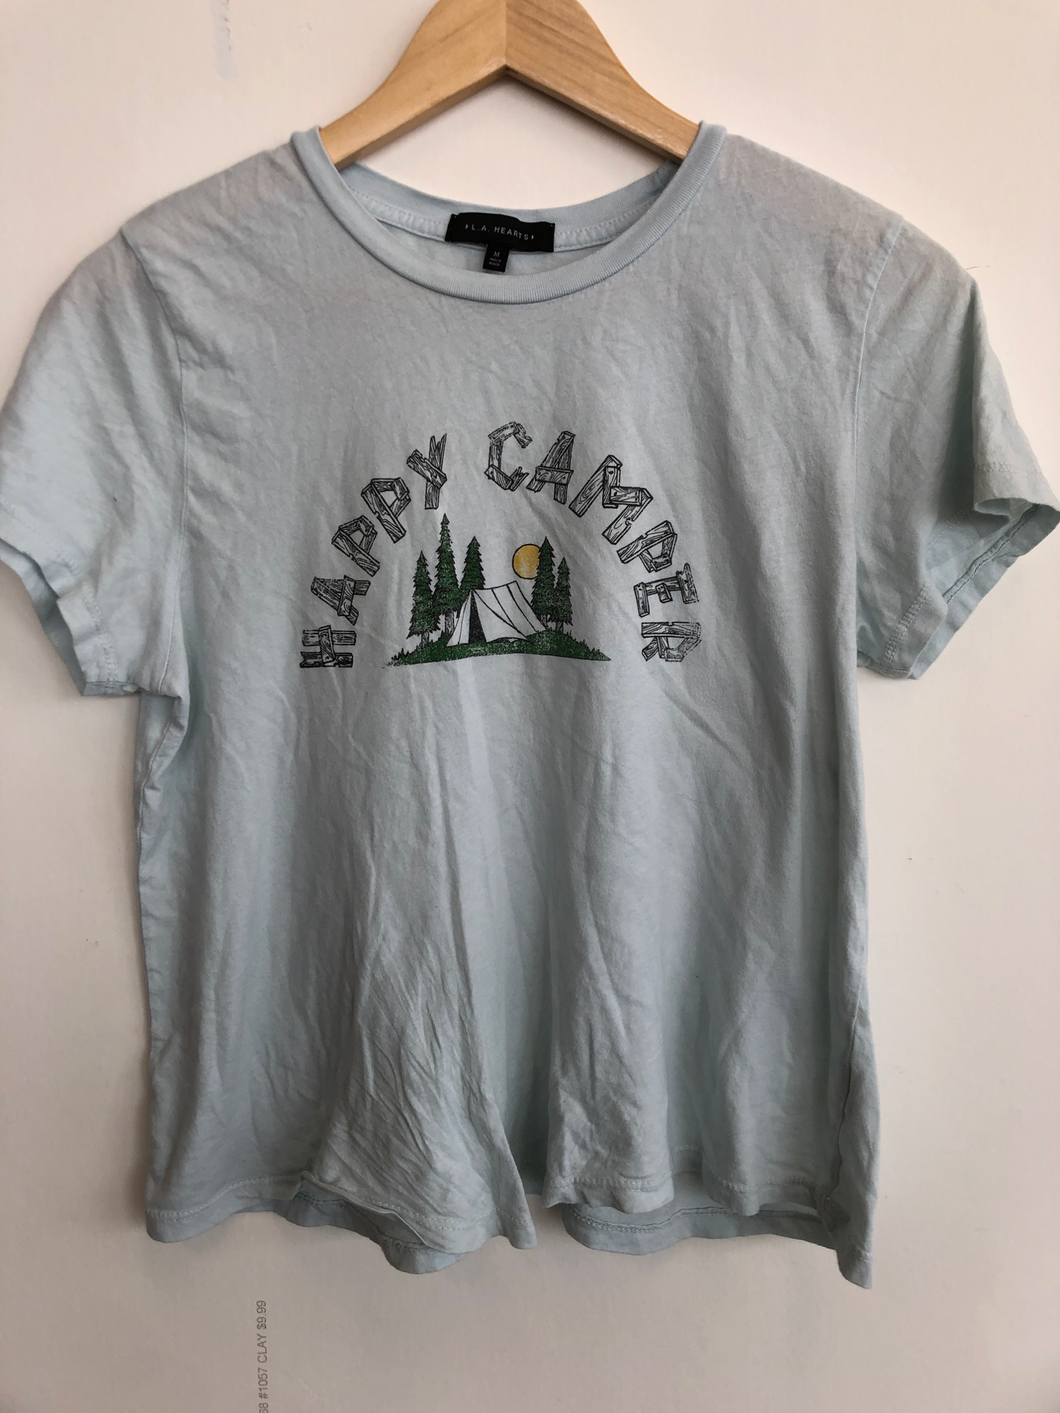 L.A. Hearts T-Shirt Size Medium